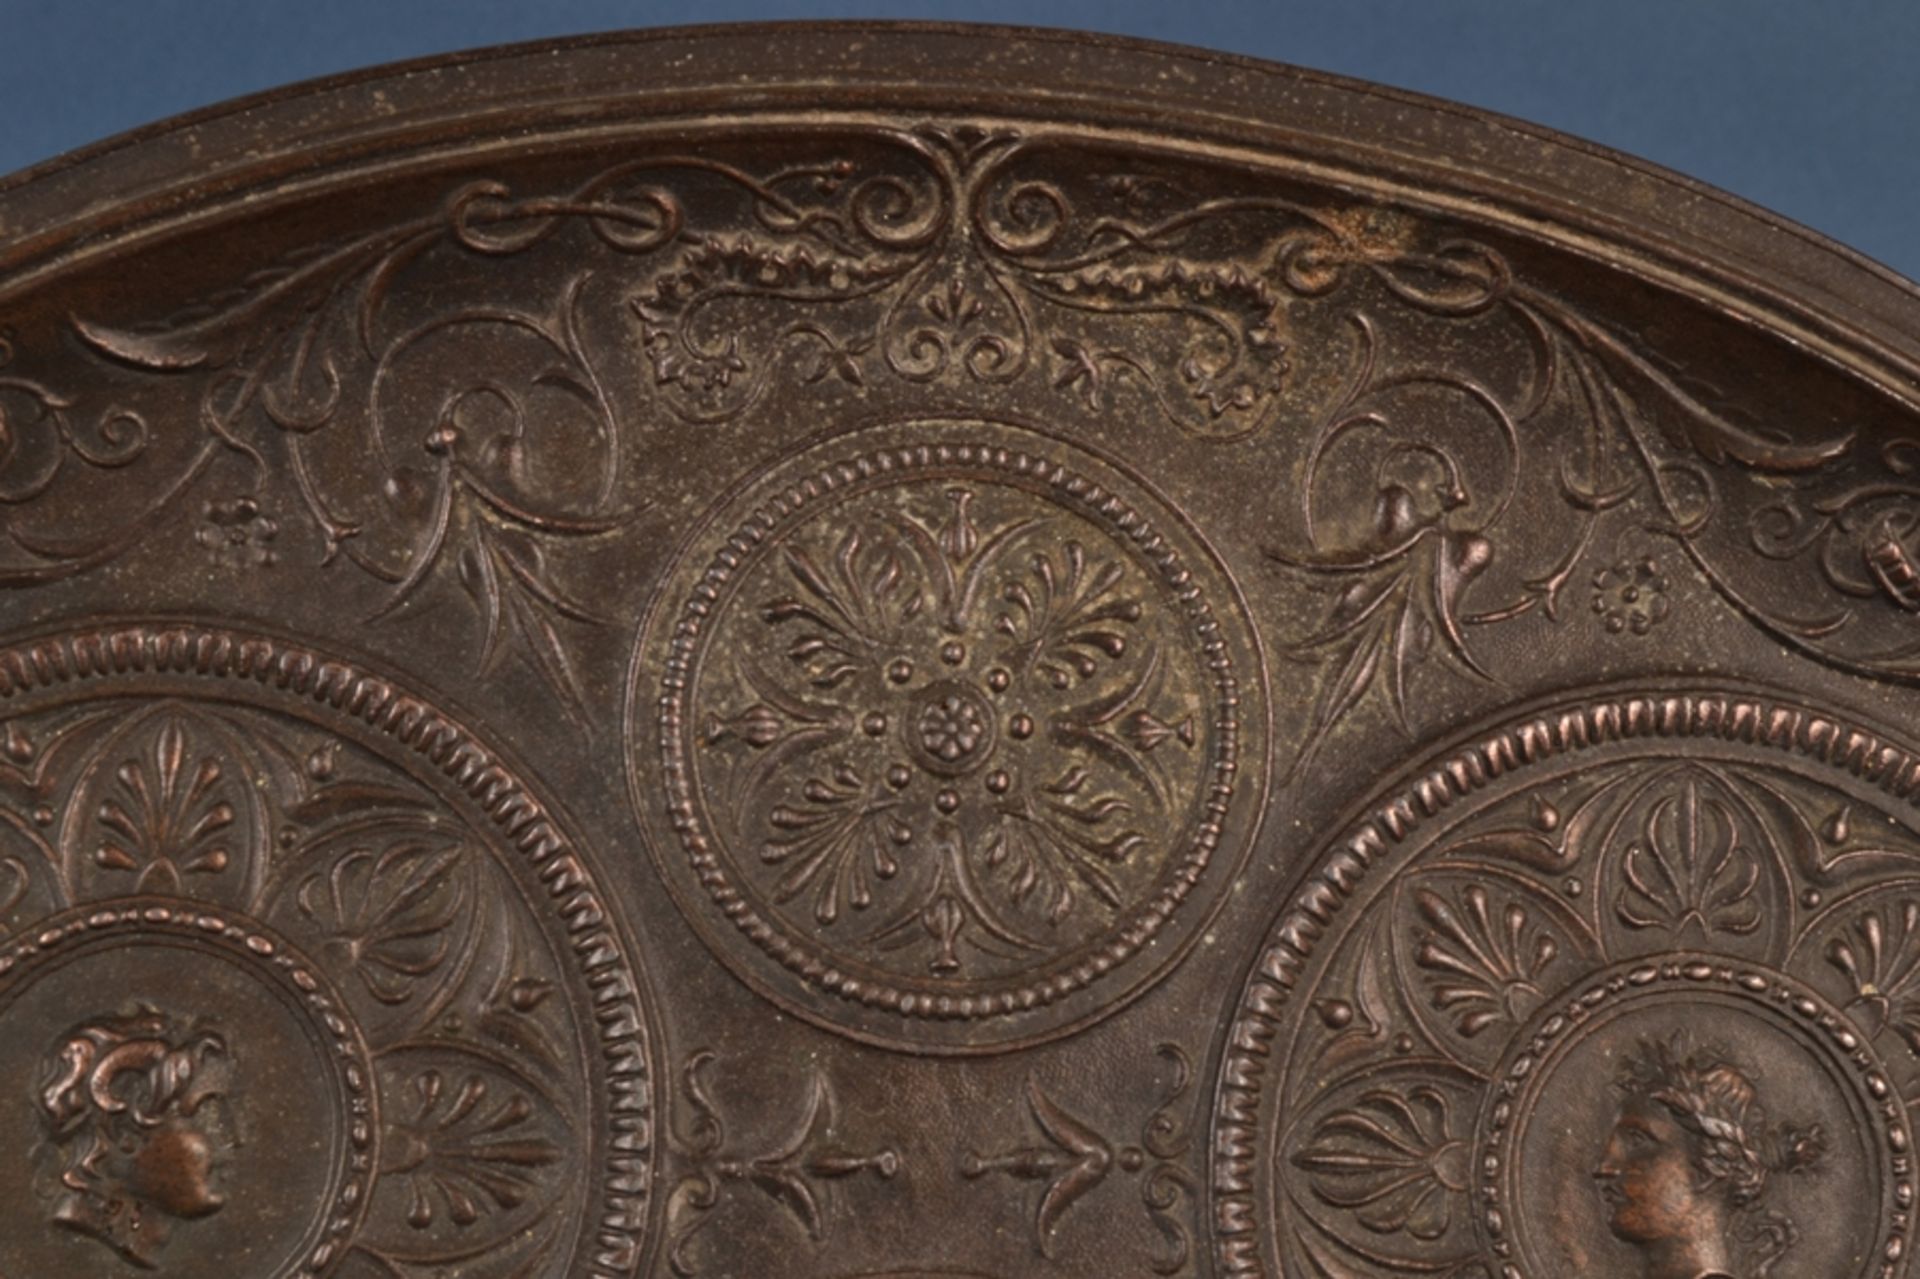 Tafelaufsatz, Metallguss, Historismus/Neo-Empire, Ende 19. Jhd., ovale Ablage von sitzender Sphinx - Image 8 of 17